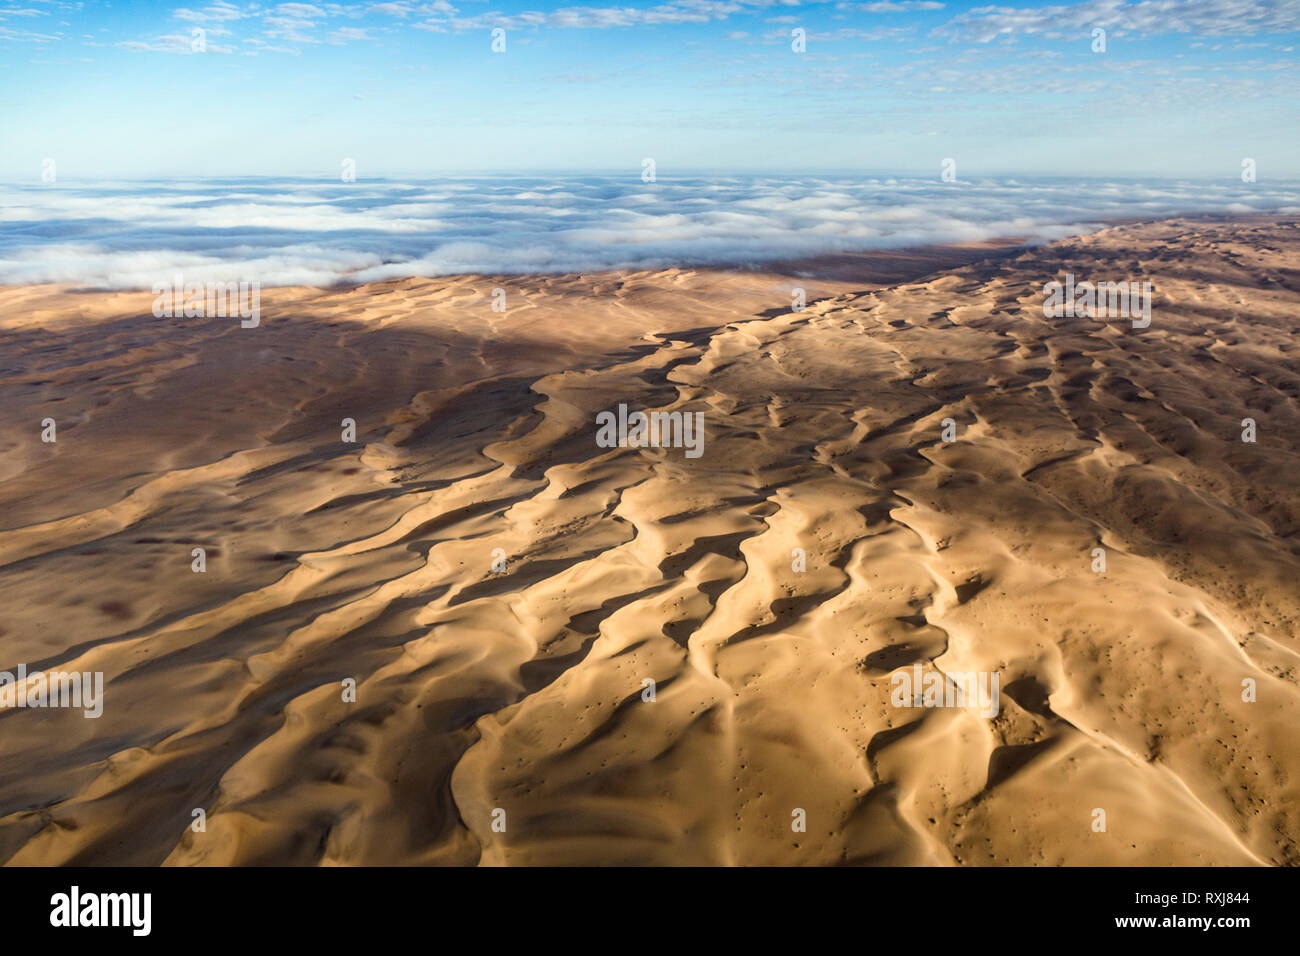 El gran mar de arena dune correa como visto desde arriba con una manta de niebla del océano Atlántico. Foto de stock